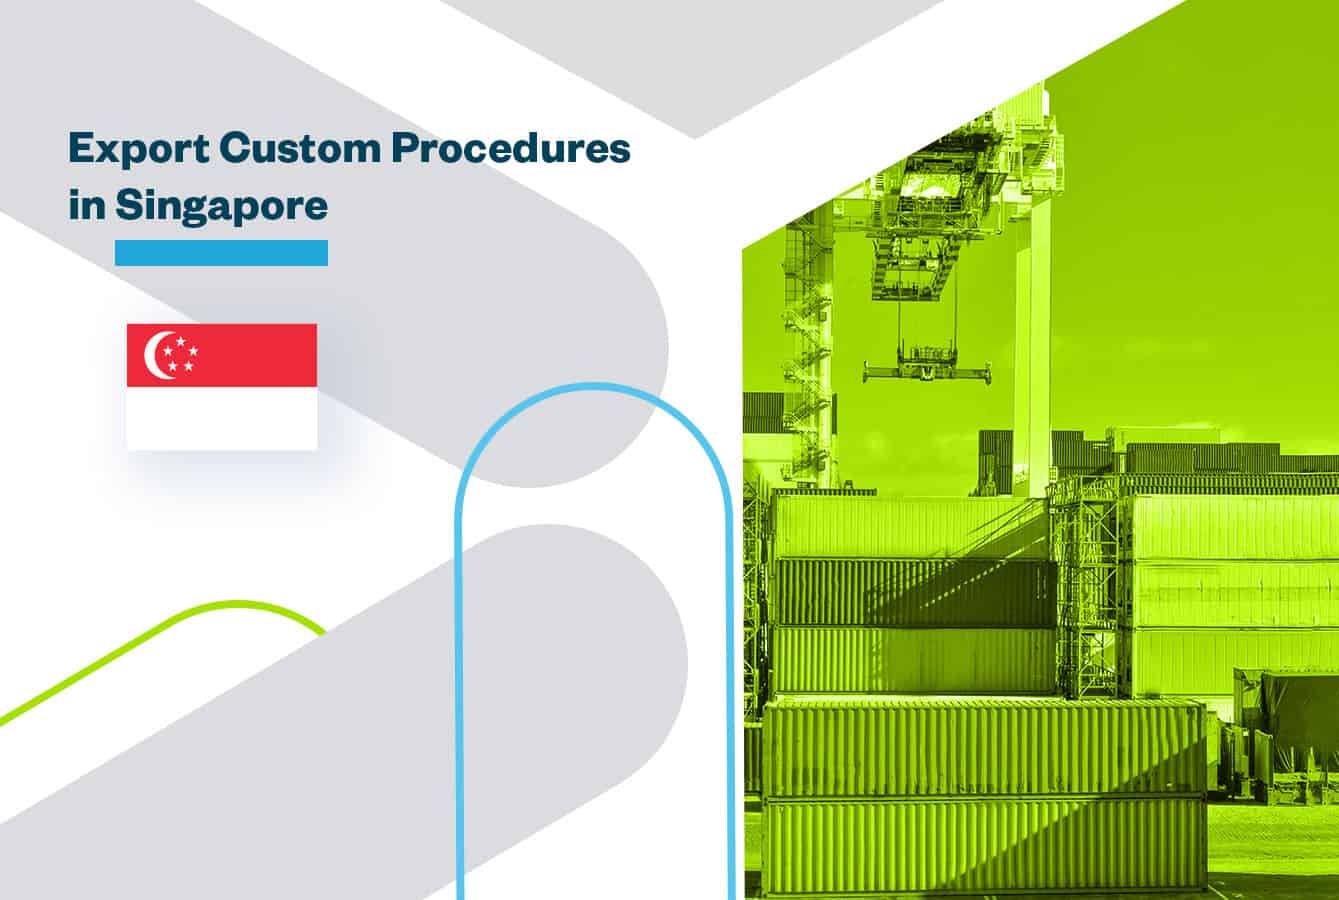 Export Customs Procedures in Singapore